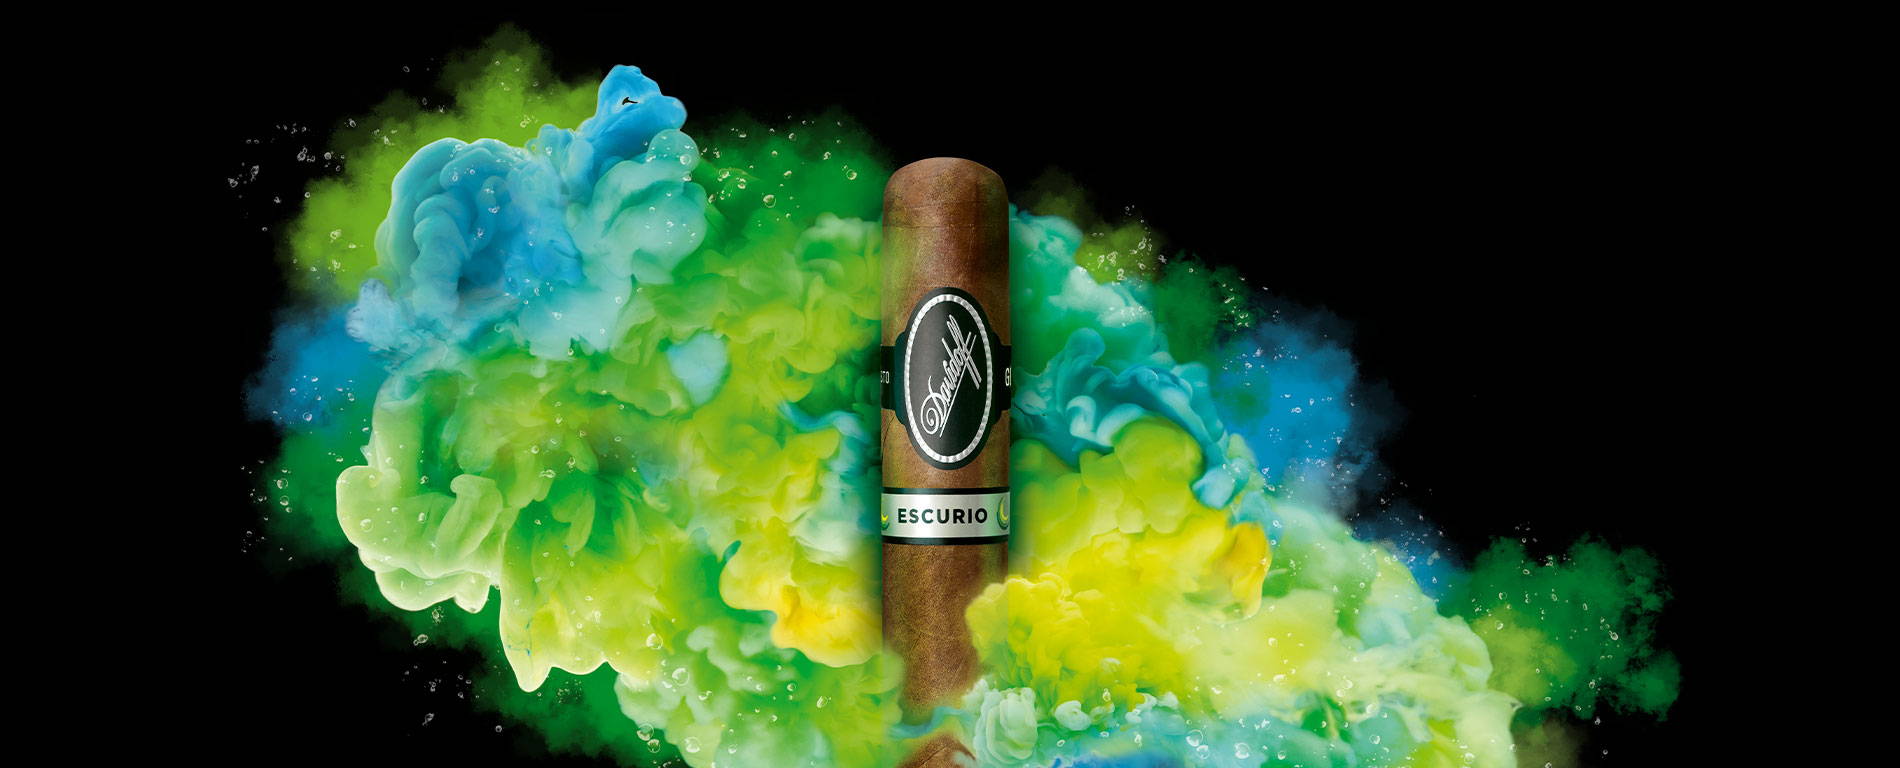 Eine Davidoff Escurio-Zigarre, die vor einer türkis-grünen Wolke von Wasserdampf platziert ist.